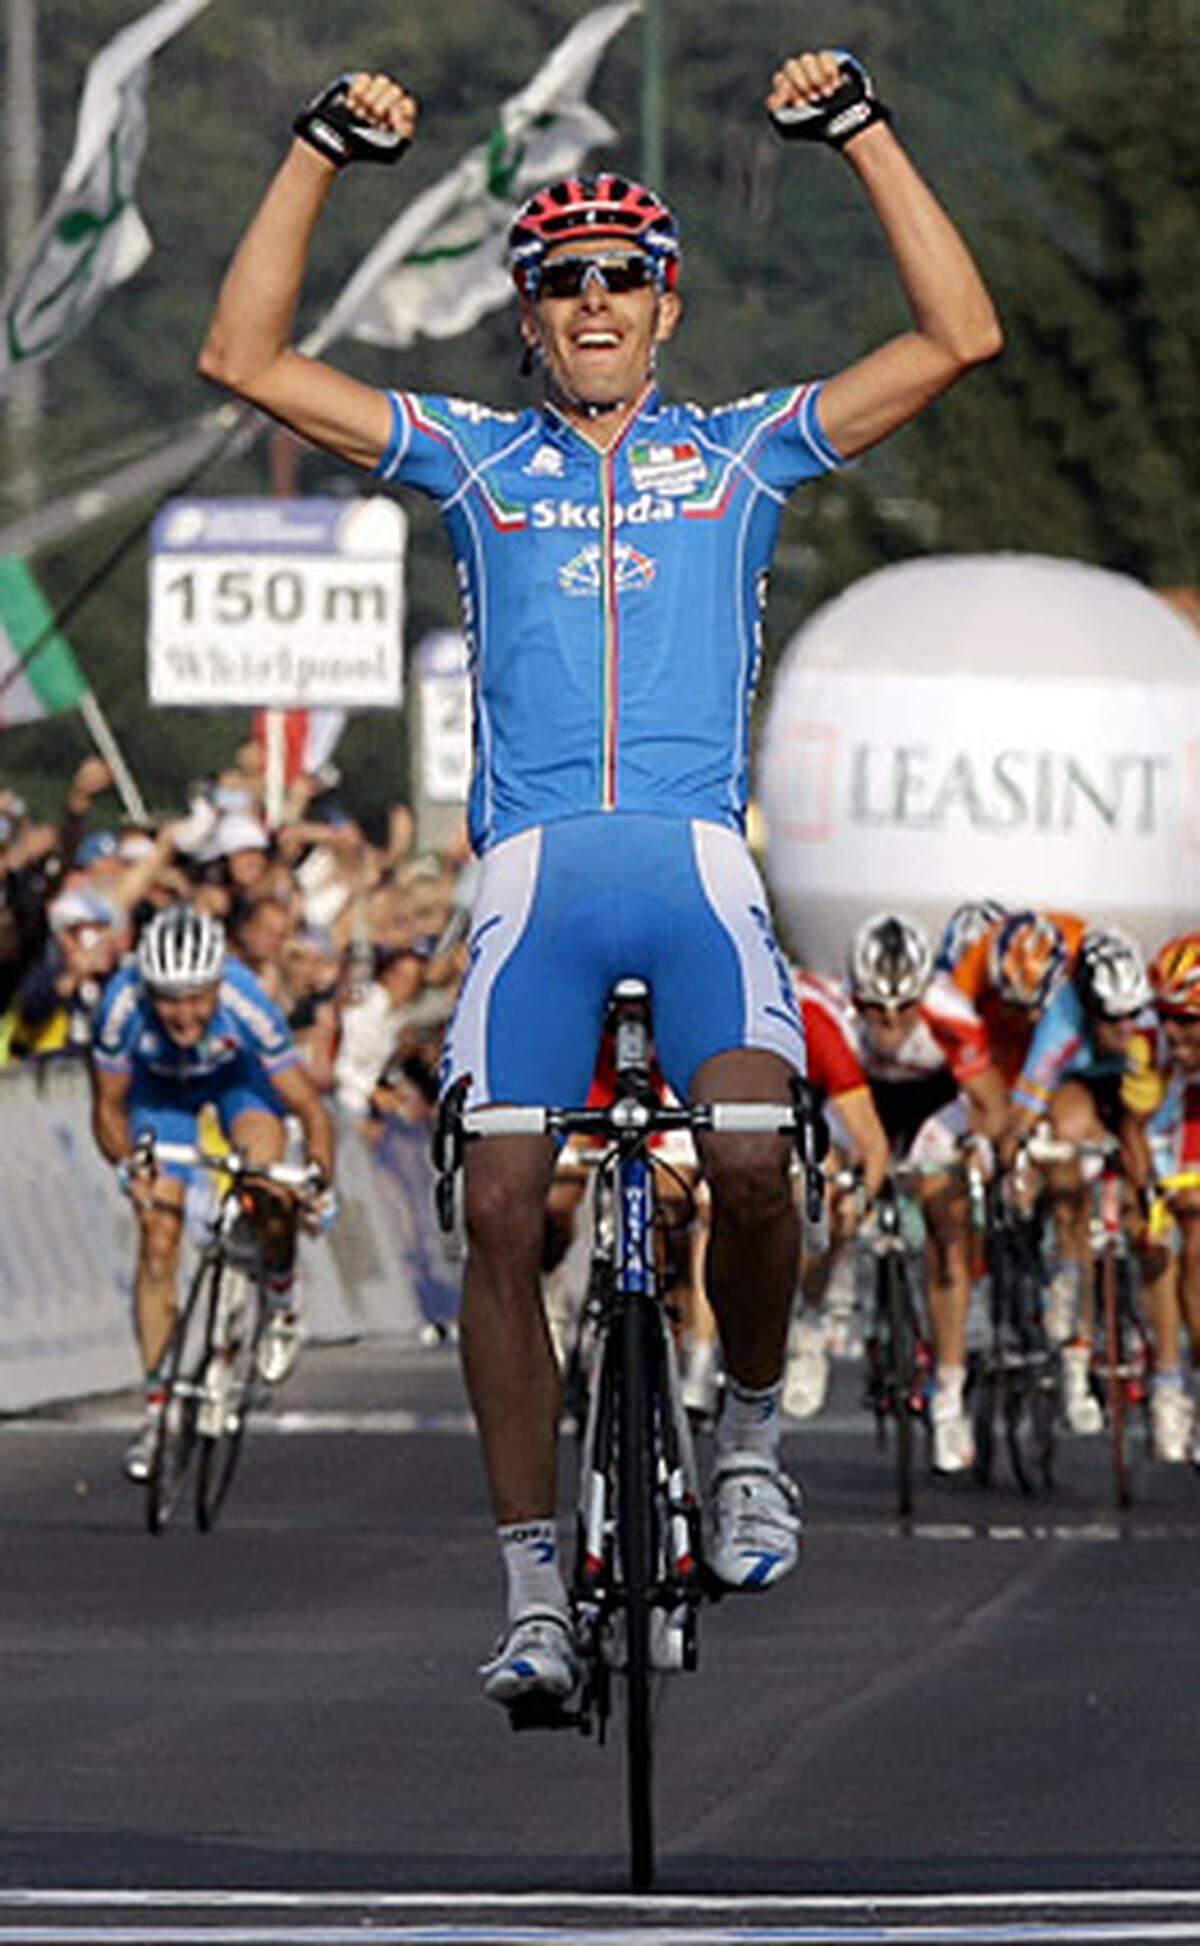 Land: Italien  Budget: 6 Millionen Euro  Bisherige Tour-Bilanz: Vier Teilnahmen, zwei Etappensiege, ein Weißes Trikot (Bester Jungprofi)  Wichtigste Fahrer 2009: Alessandro Ballan (ITA/Bild), Marzio Bruseghin (ITA)